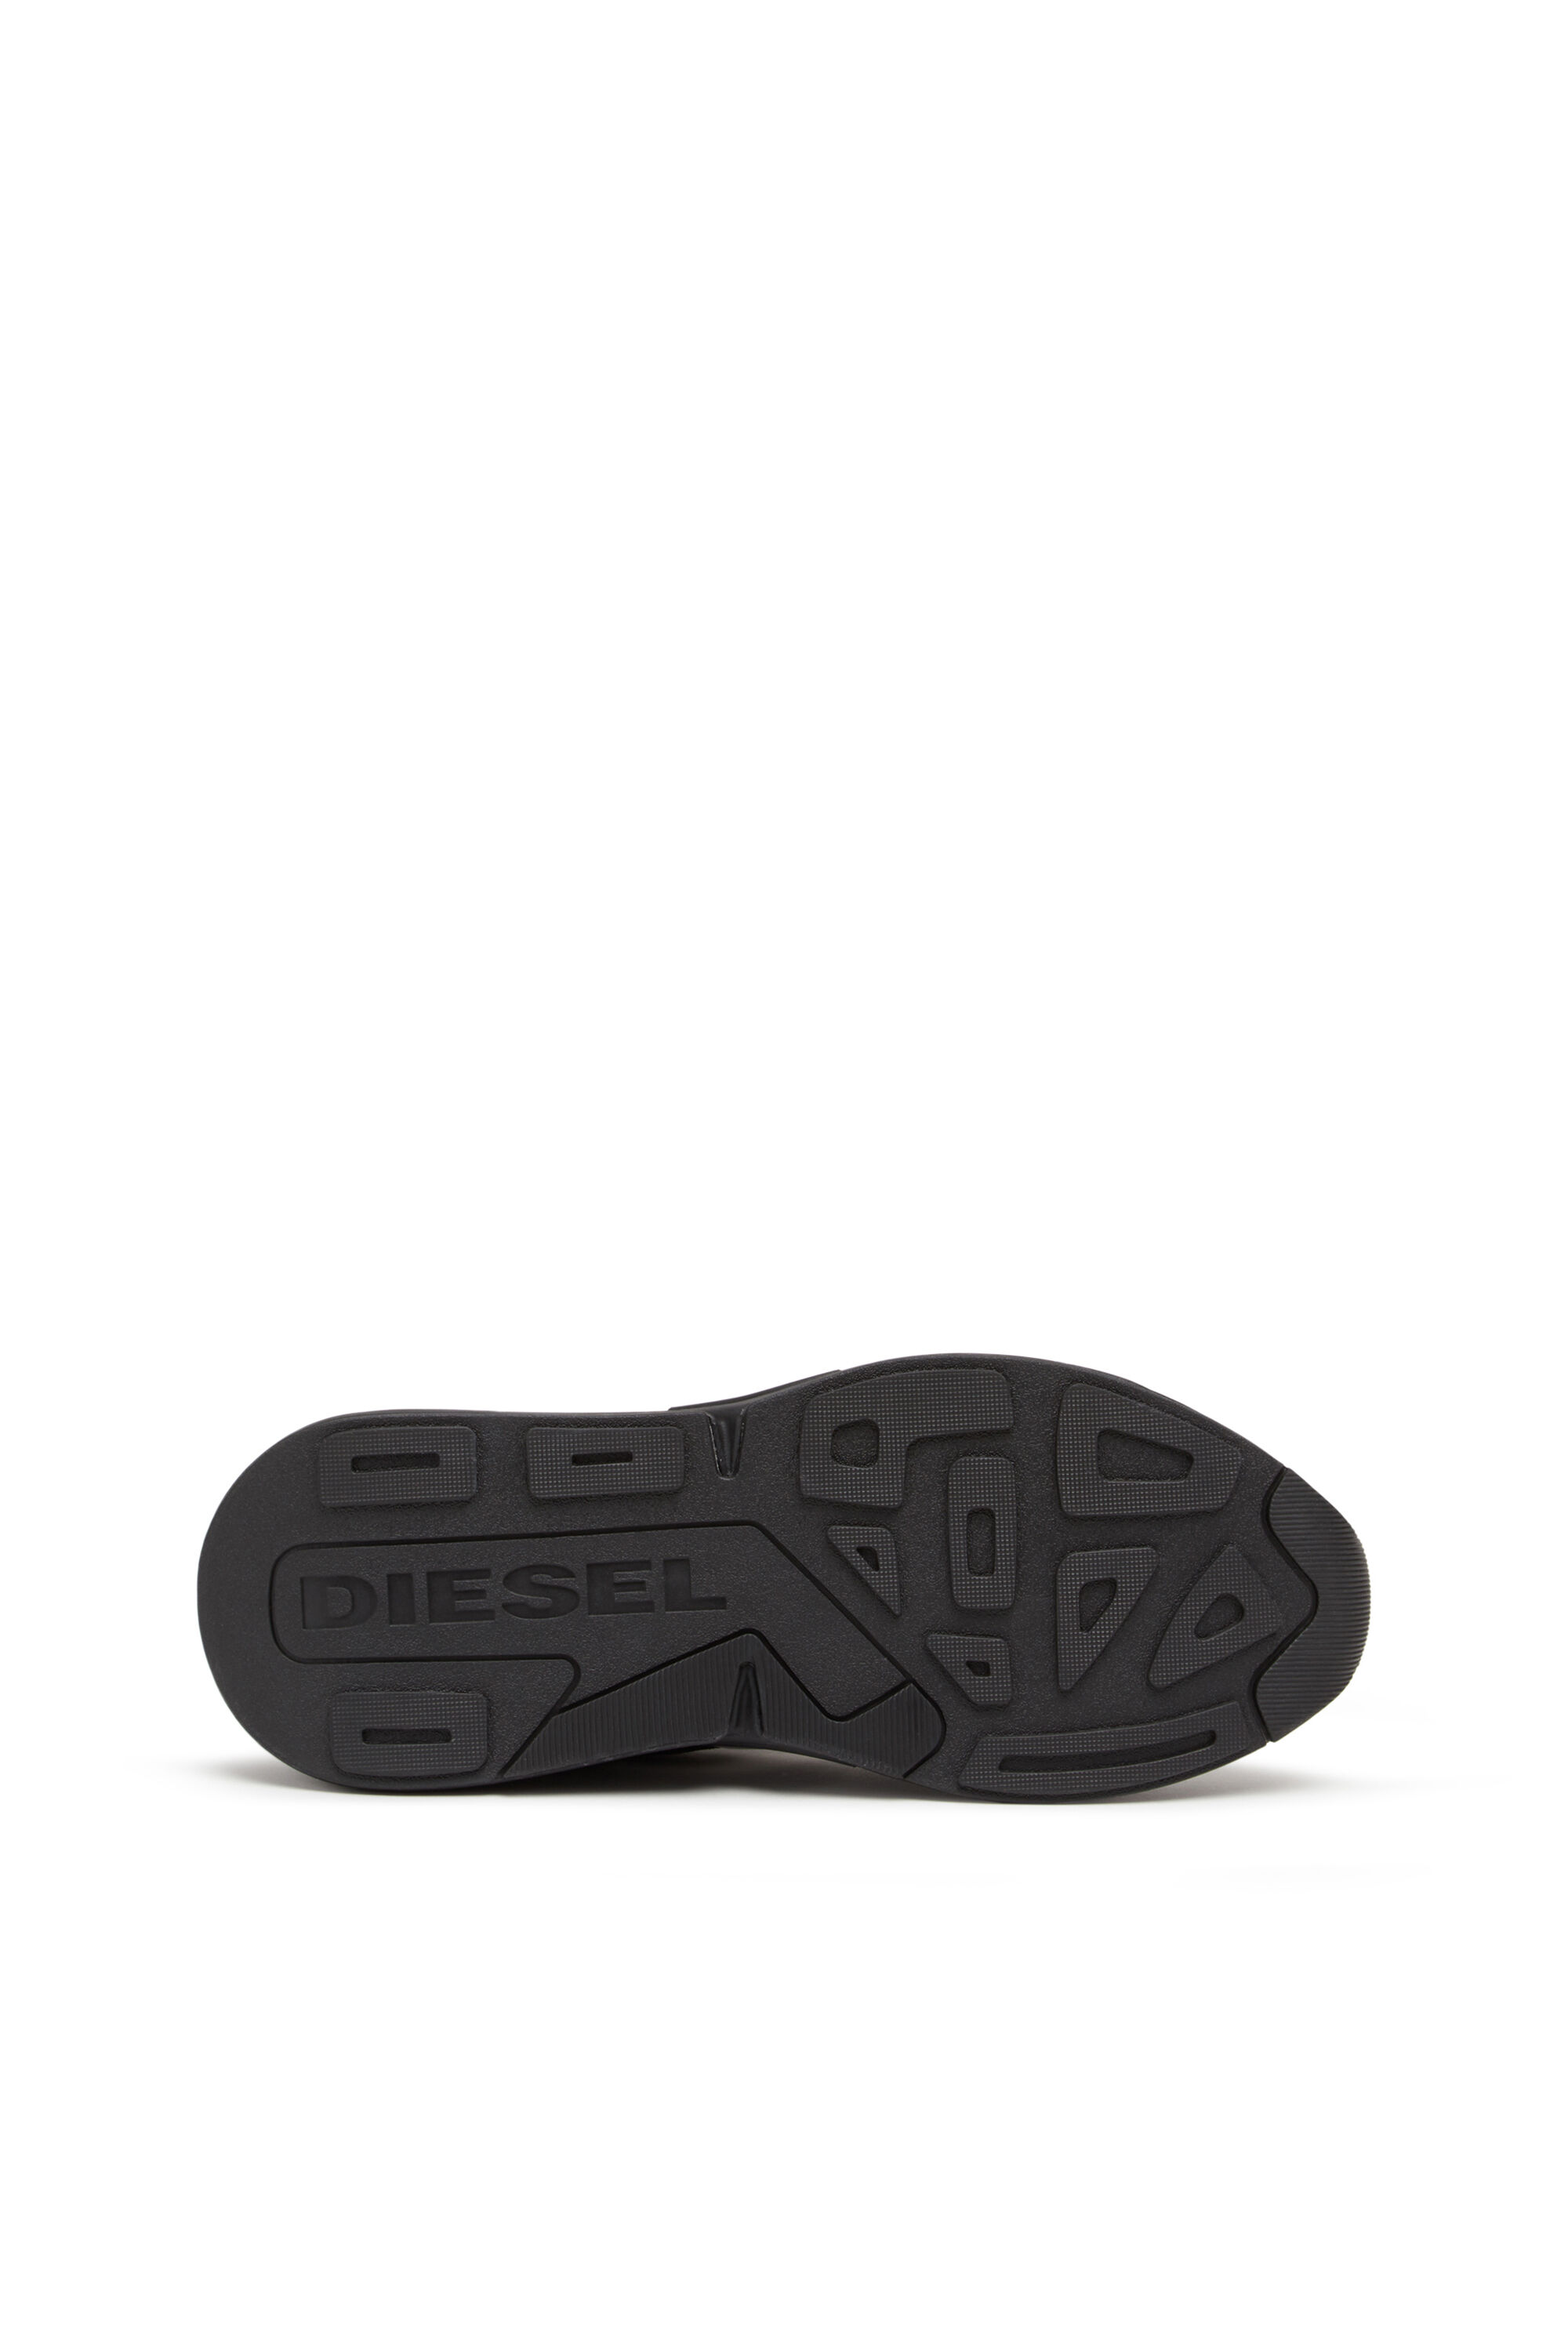 S-SERENDIPITY SPORT: Women's mesh sneakers, chunky sole | Diesel